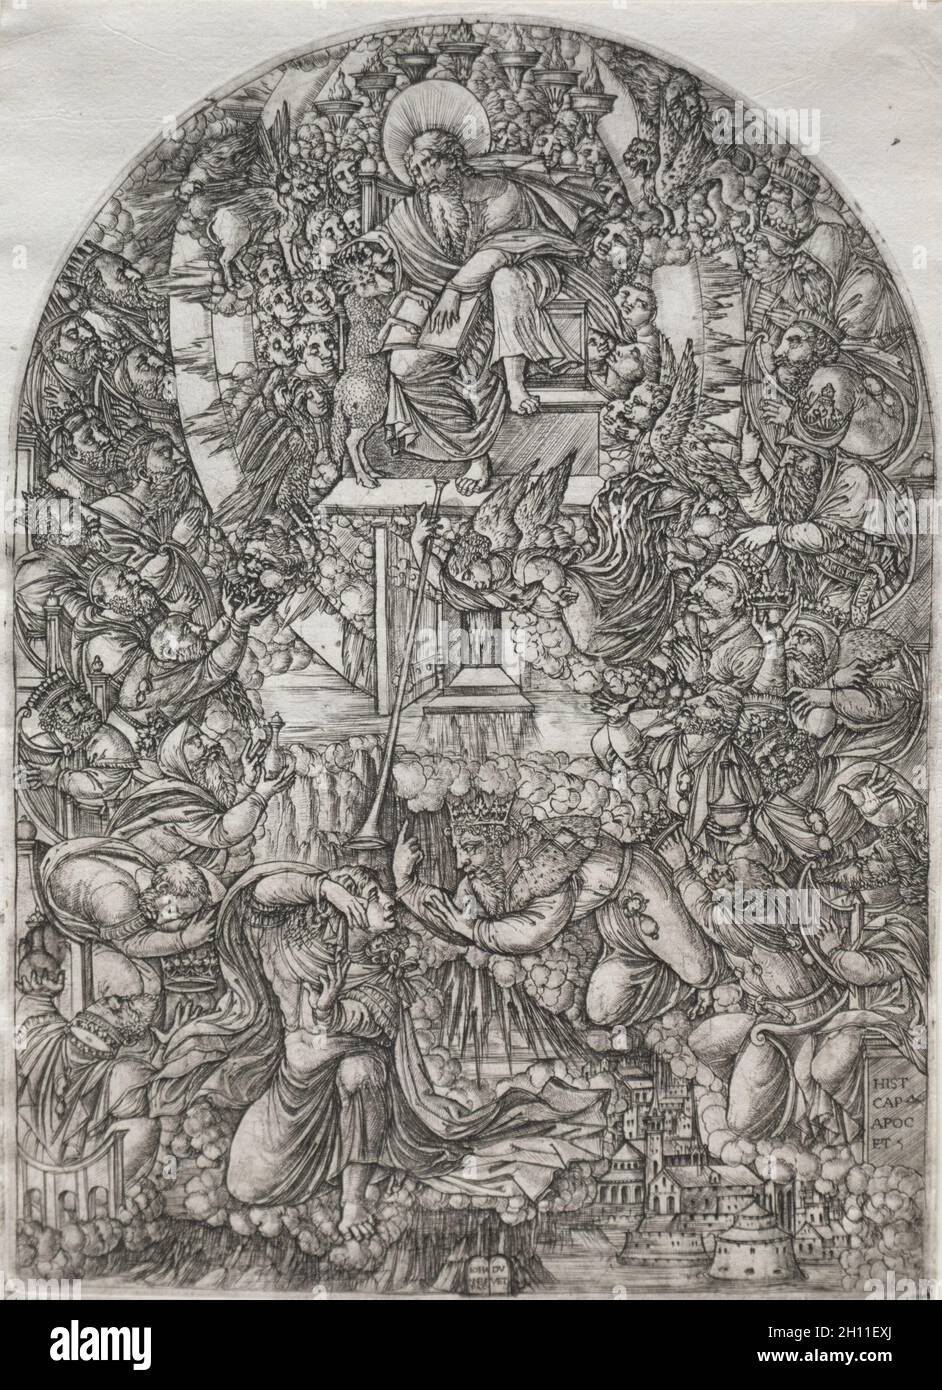 Die Apokalpse: Der heilige Johannes, der in den Himmel beschworen wurde, 1555. Jean-Bettdecke (Französisch, 1485-1561). Gravur; gerahmt: 52.4 x 39.7 x 2.5 cm (20 5/8 x 15 5/8 x 1 Zoll); ungerahmt: 30.4 x 21.9 cm (11 15/16 x 8 5/8 Zoll); Platte: 30.1 x 21.8 cm (11 7/8 x 8 9/16 Zoll). Stockfoto